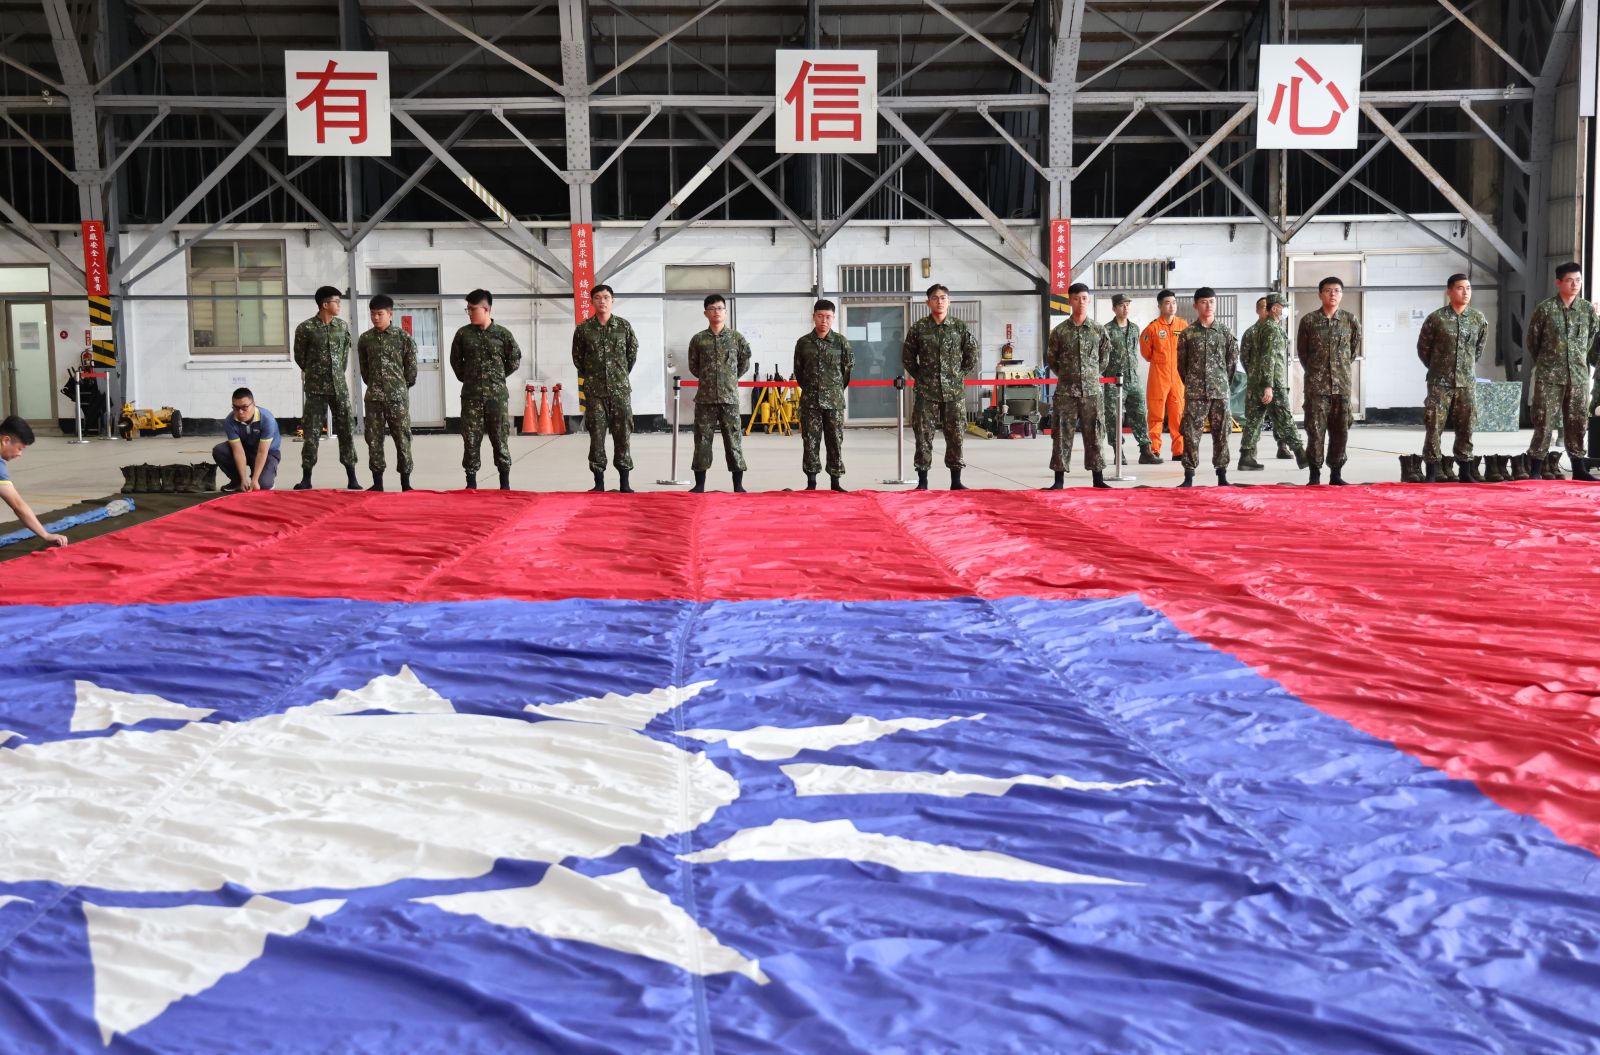 CH-47吊掛巨型國旗執行國慶參演。林啟弘攝